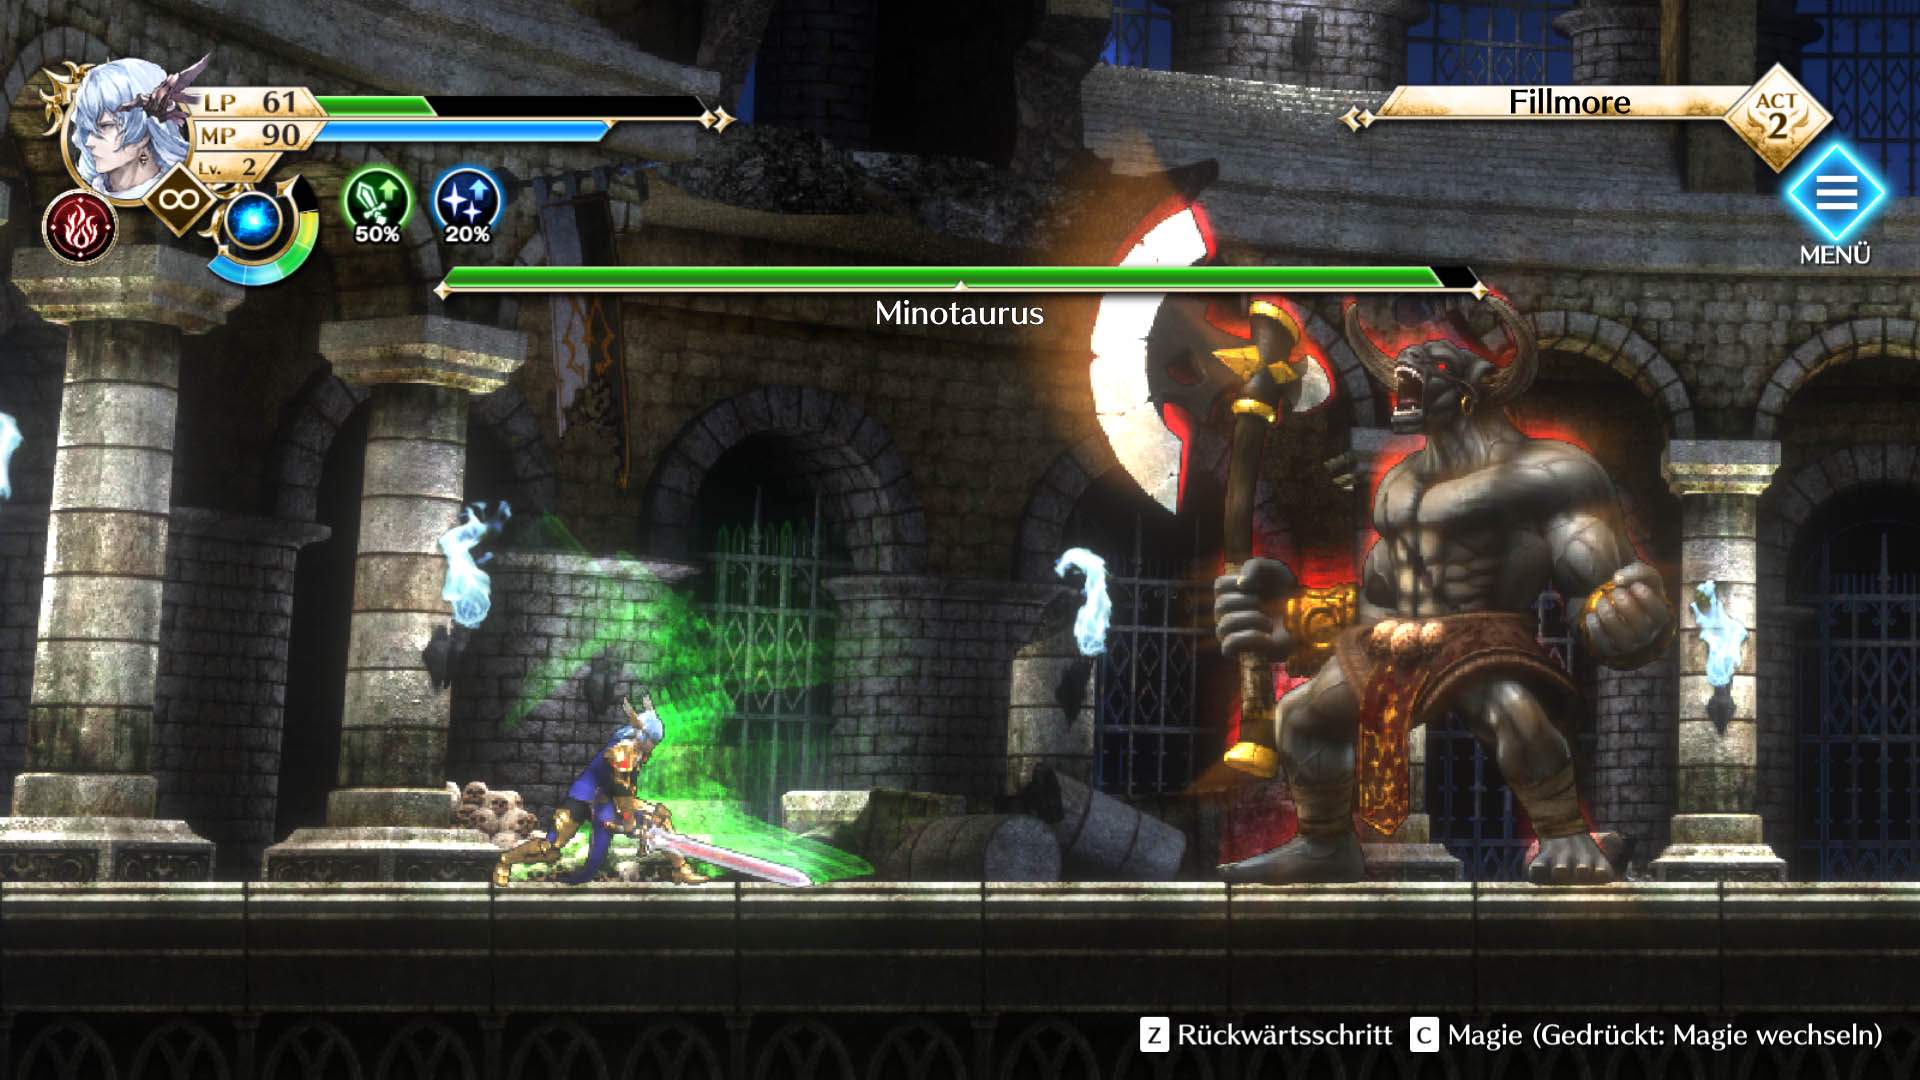 Gameplay-Screenshot des Protagonisten von Actraiser Renaissance im Kampf gegen den Minotaurus.